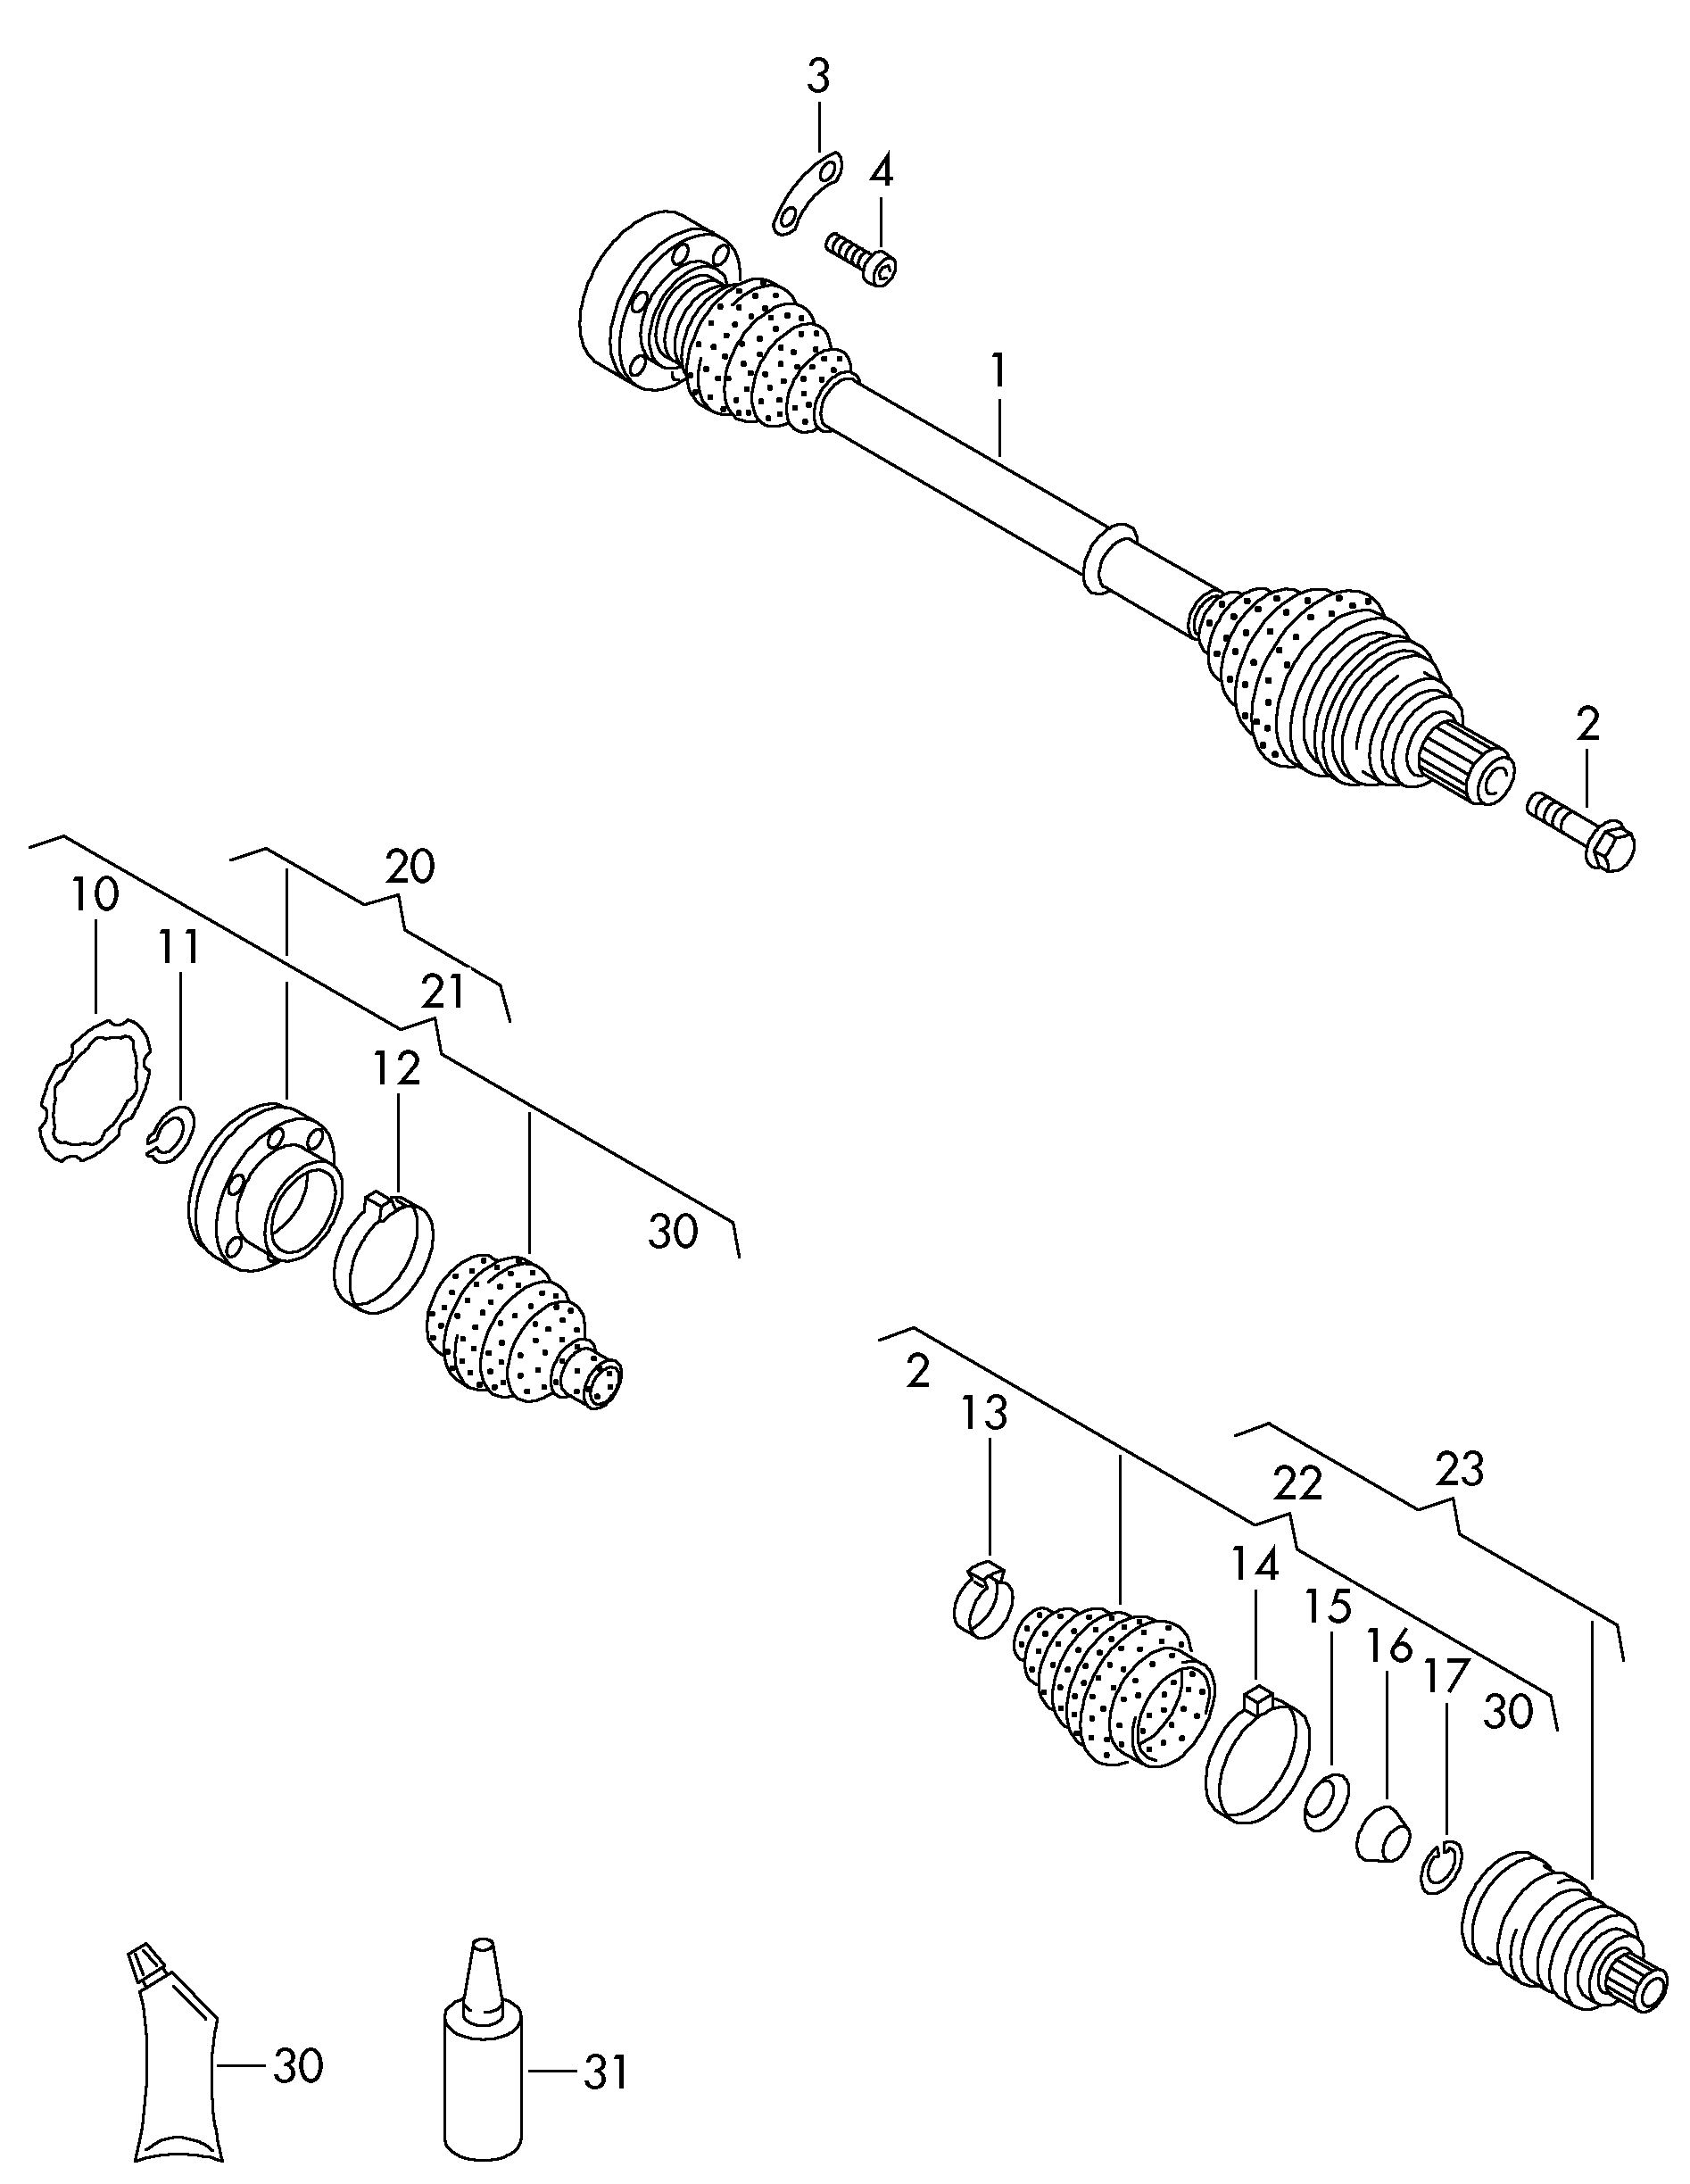 Junta articuladap. cambio manual delantero - Transporter - tr